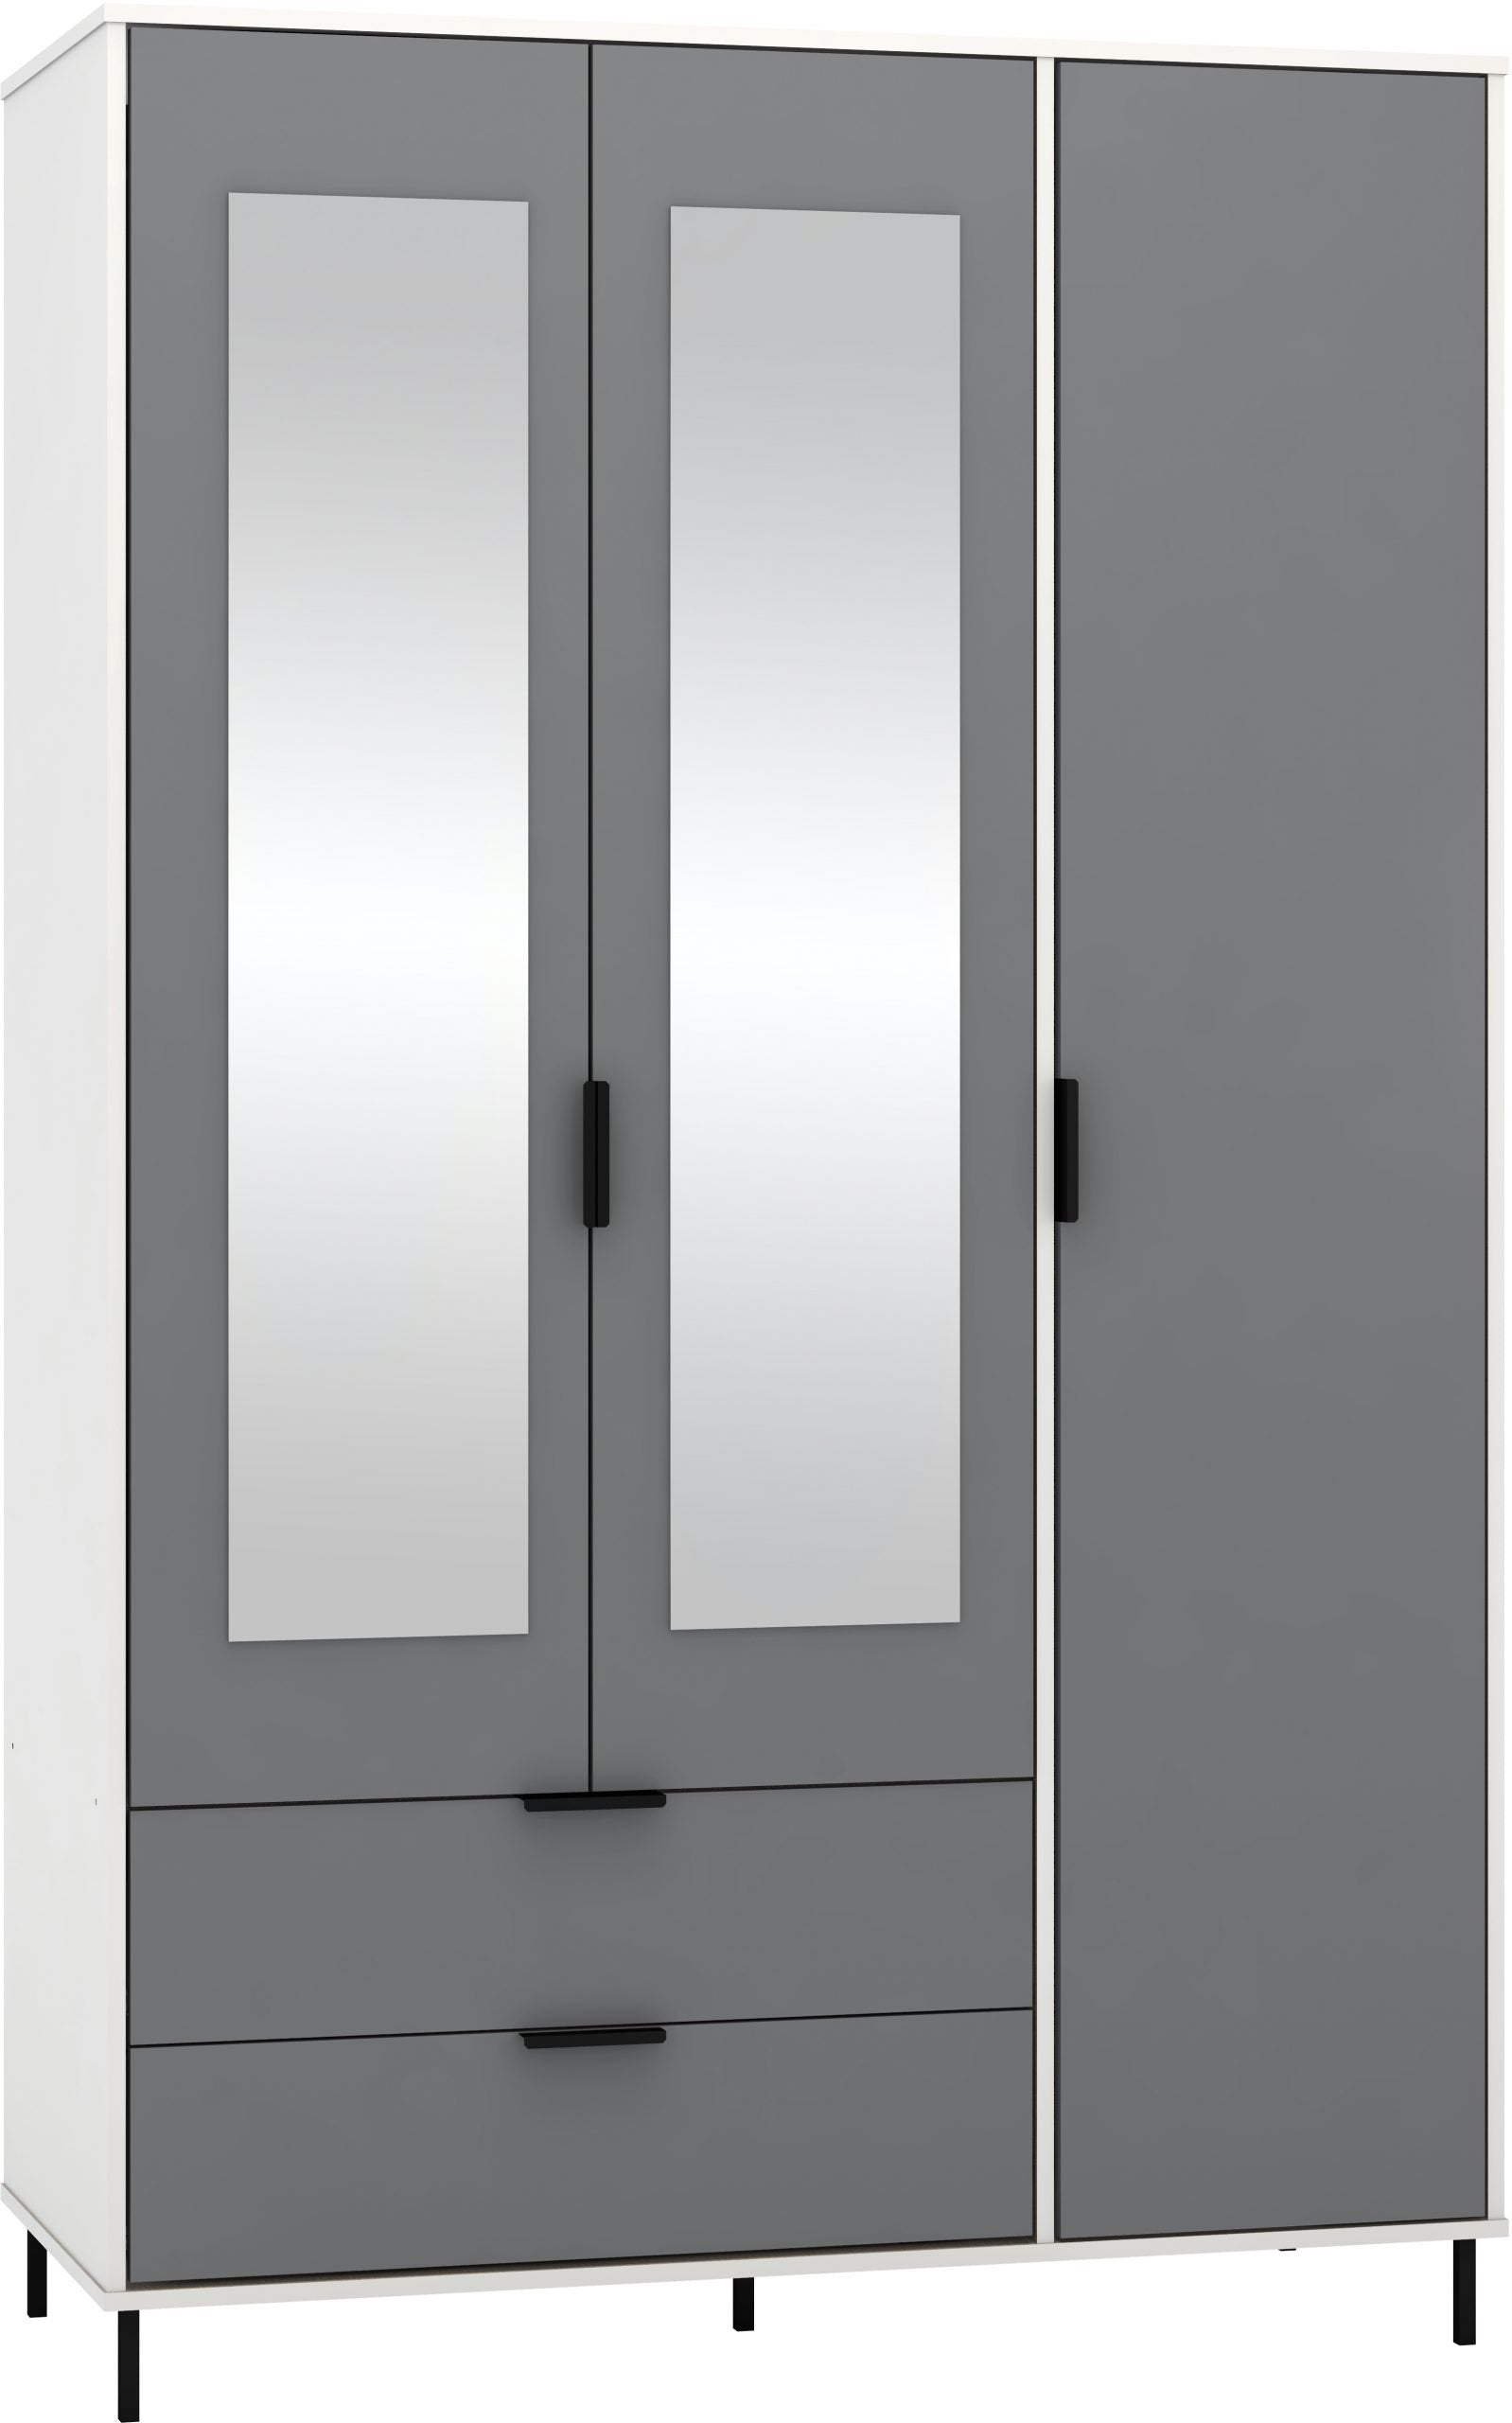 3 Door 2 Drawer Mirrored Wardrobe Grey/White Gloss